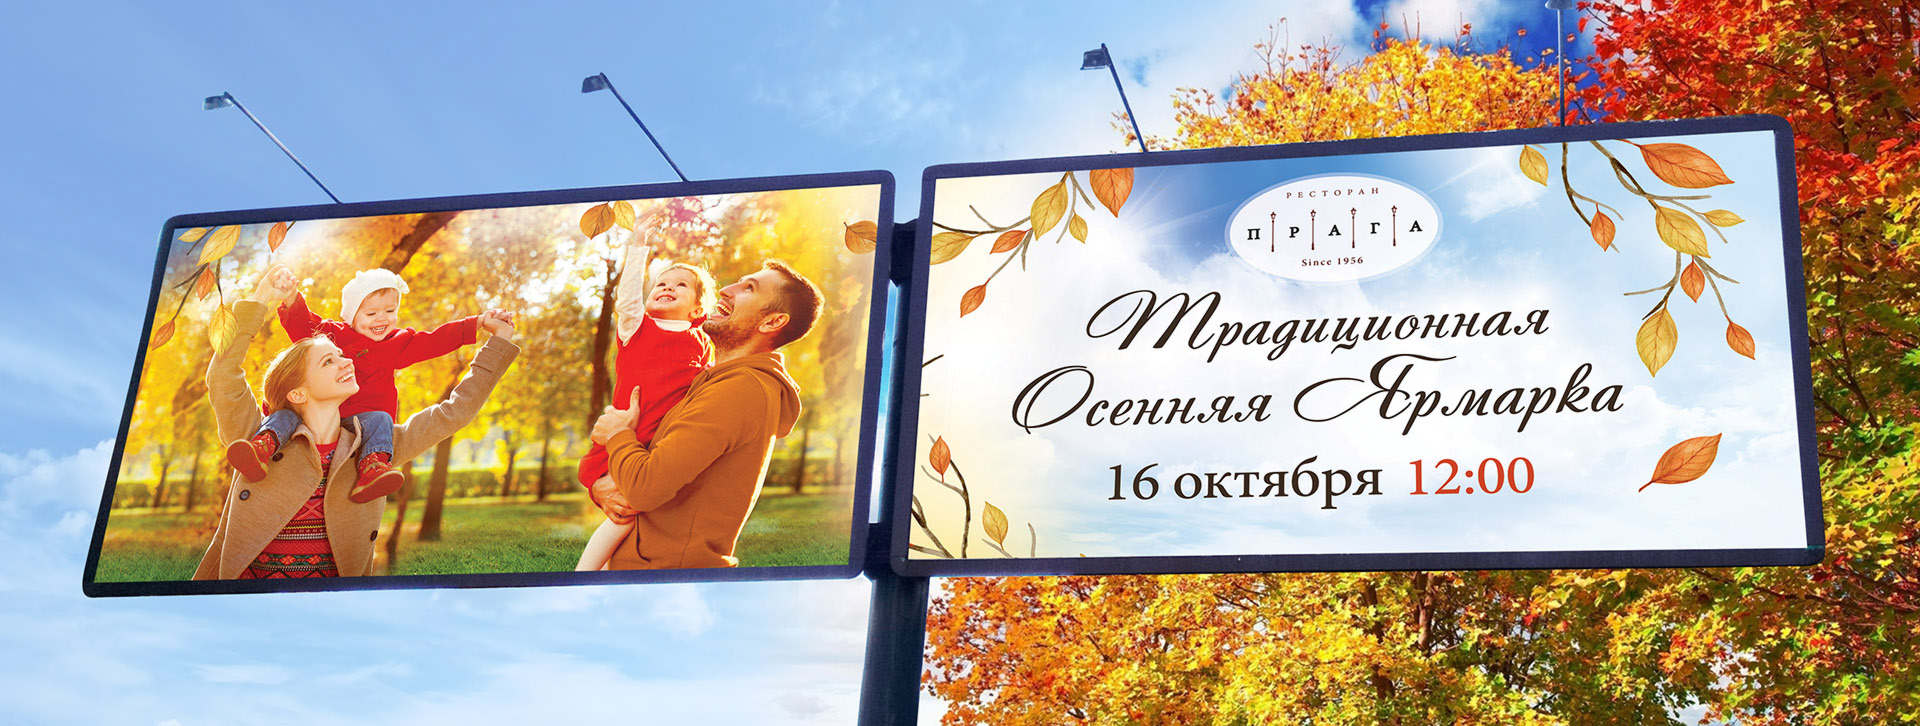 Билборд of the restaurant Прага Традиционная осенняя ярмарка